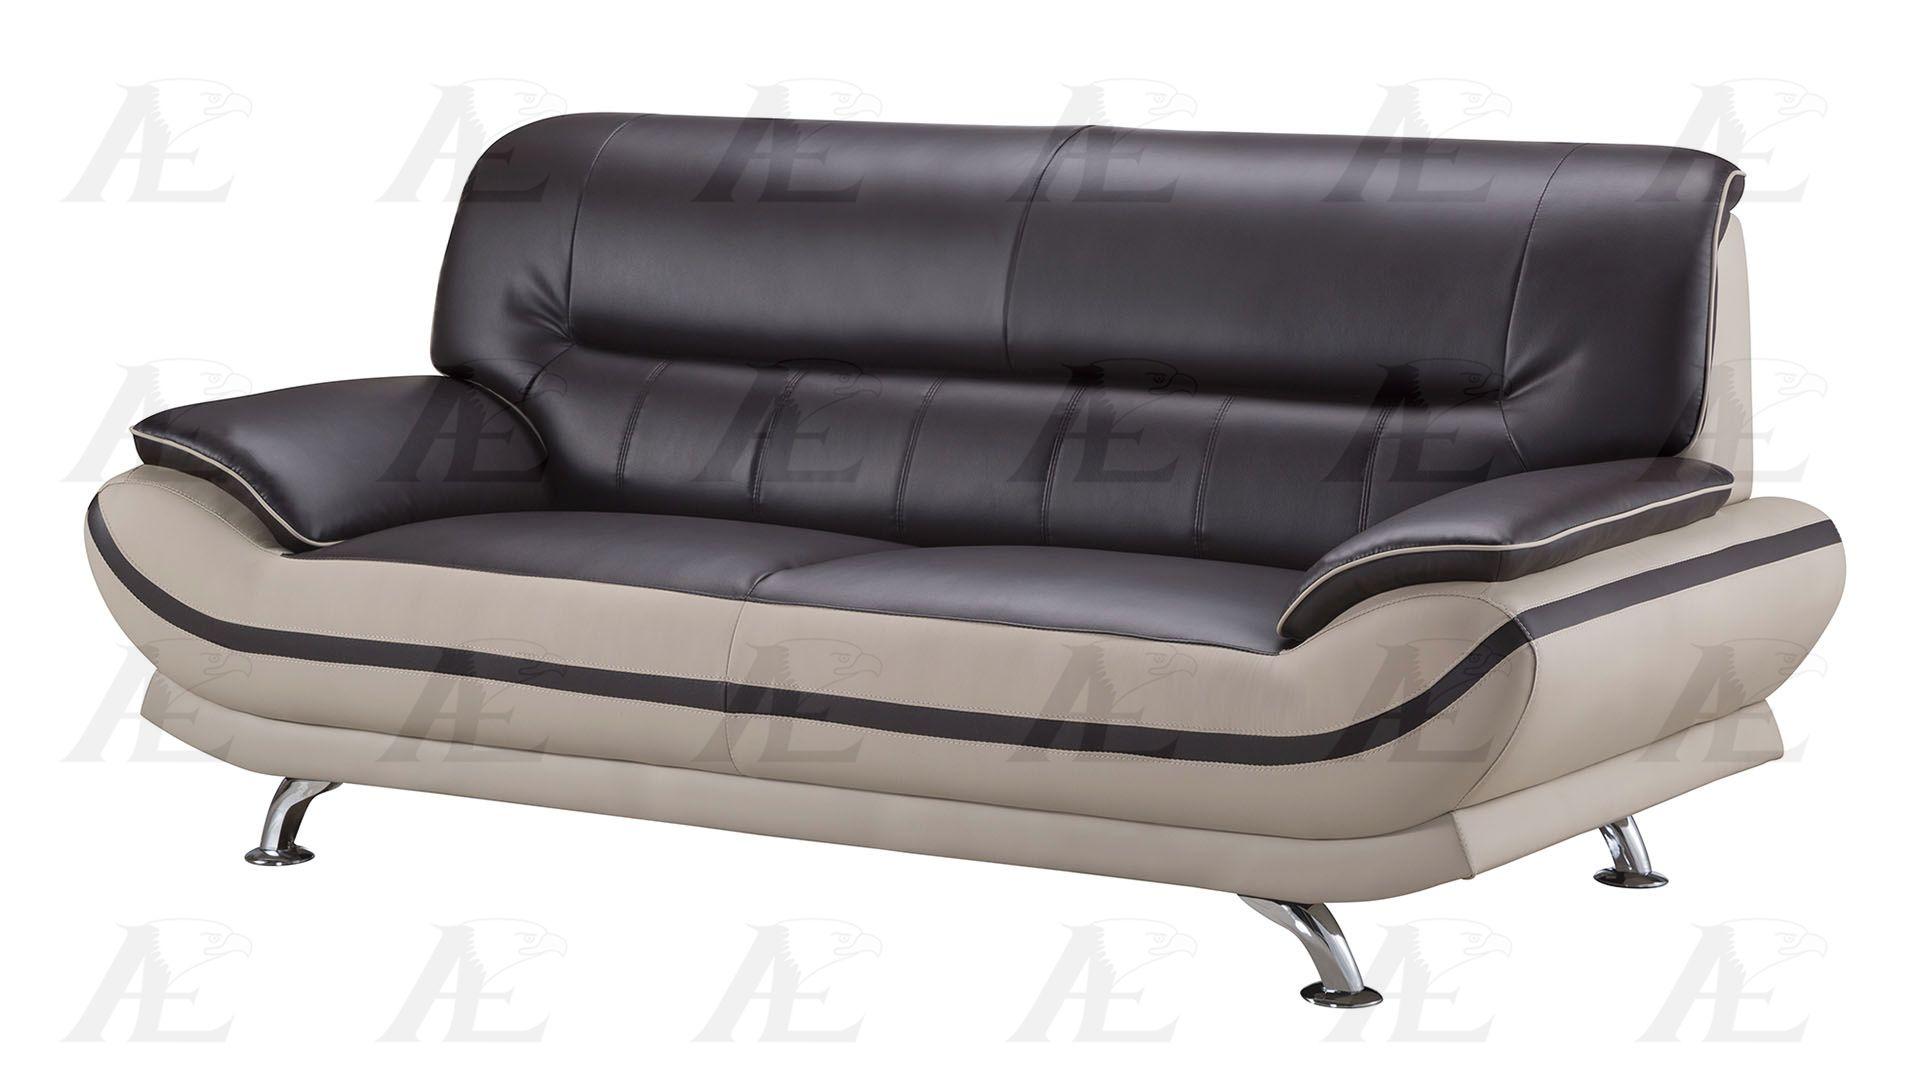 

    
American Eagle Furniture AE709-MA.LG Sofa and 2 Loveseat Set Mahogany/Light Gray AE709-MA.LG Set-3
